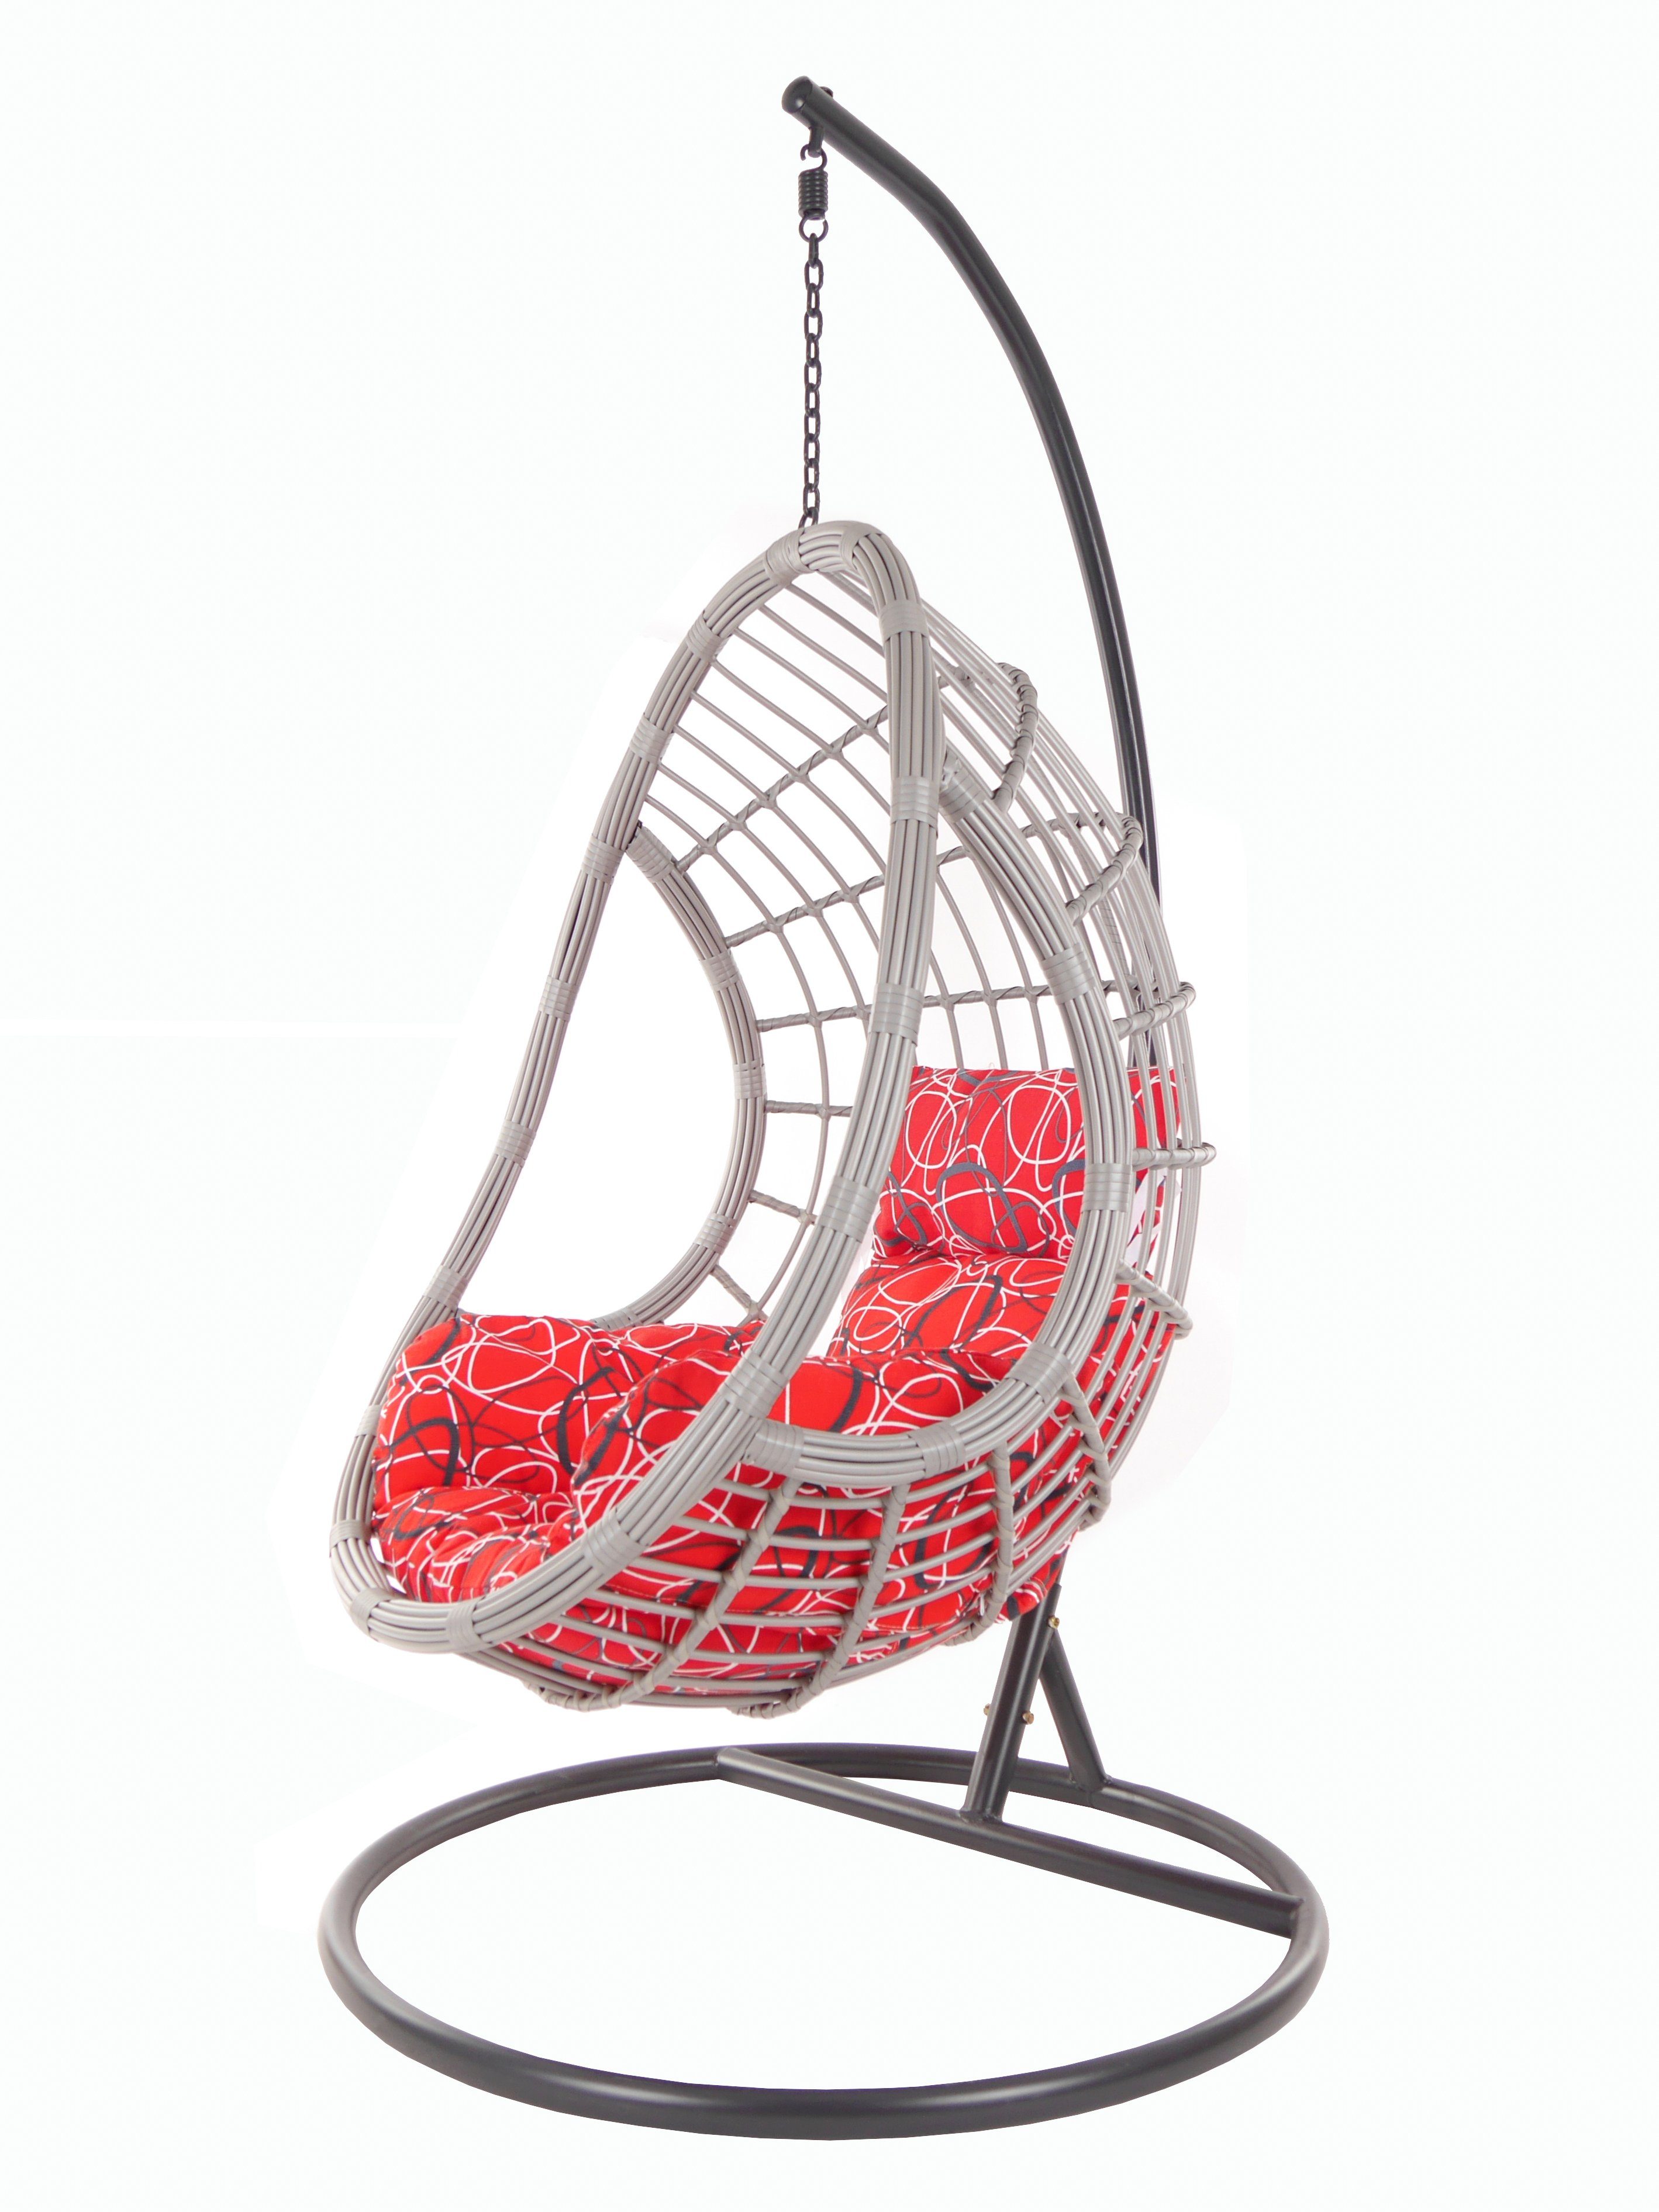 Loungemöbel, rot gemustert PALMANOVA Swing Hängesessel KIDEO und Hängesessel frizzy) Gestell Chair, (3088 lightgrey, red Kissen mit